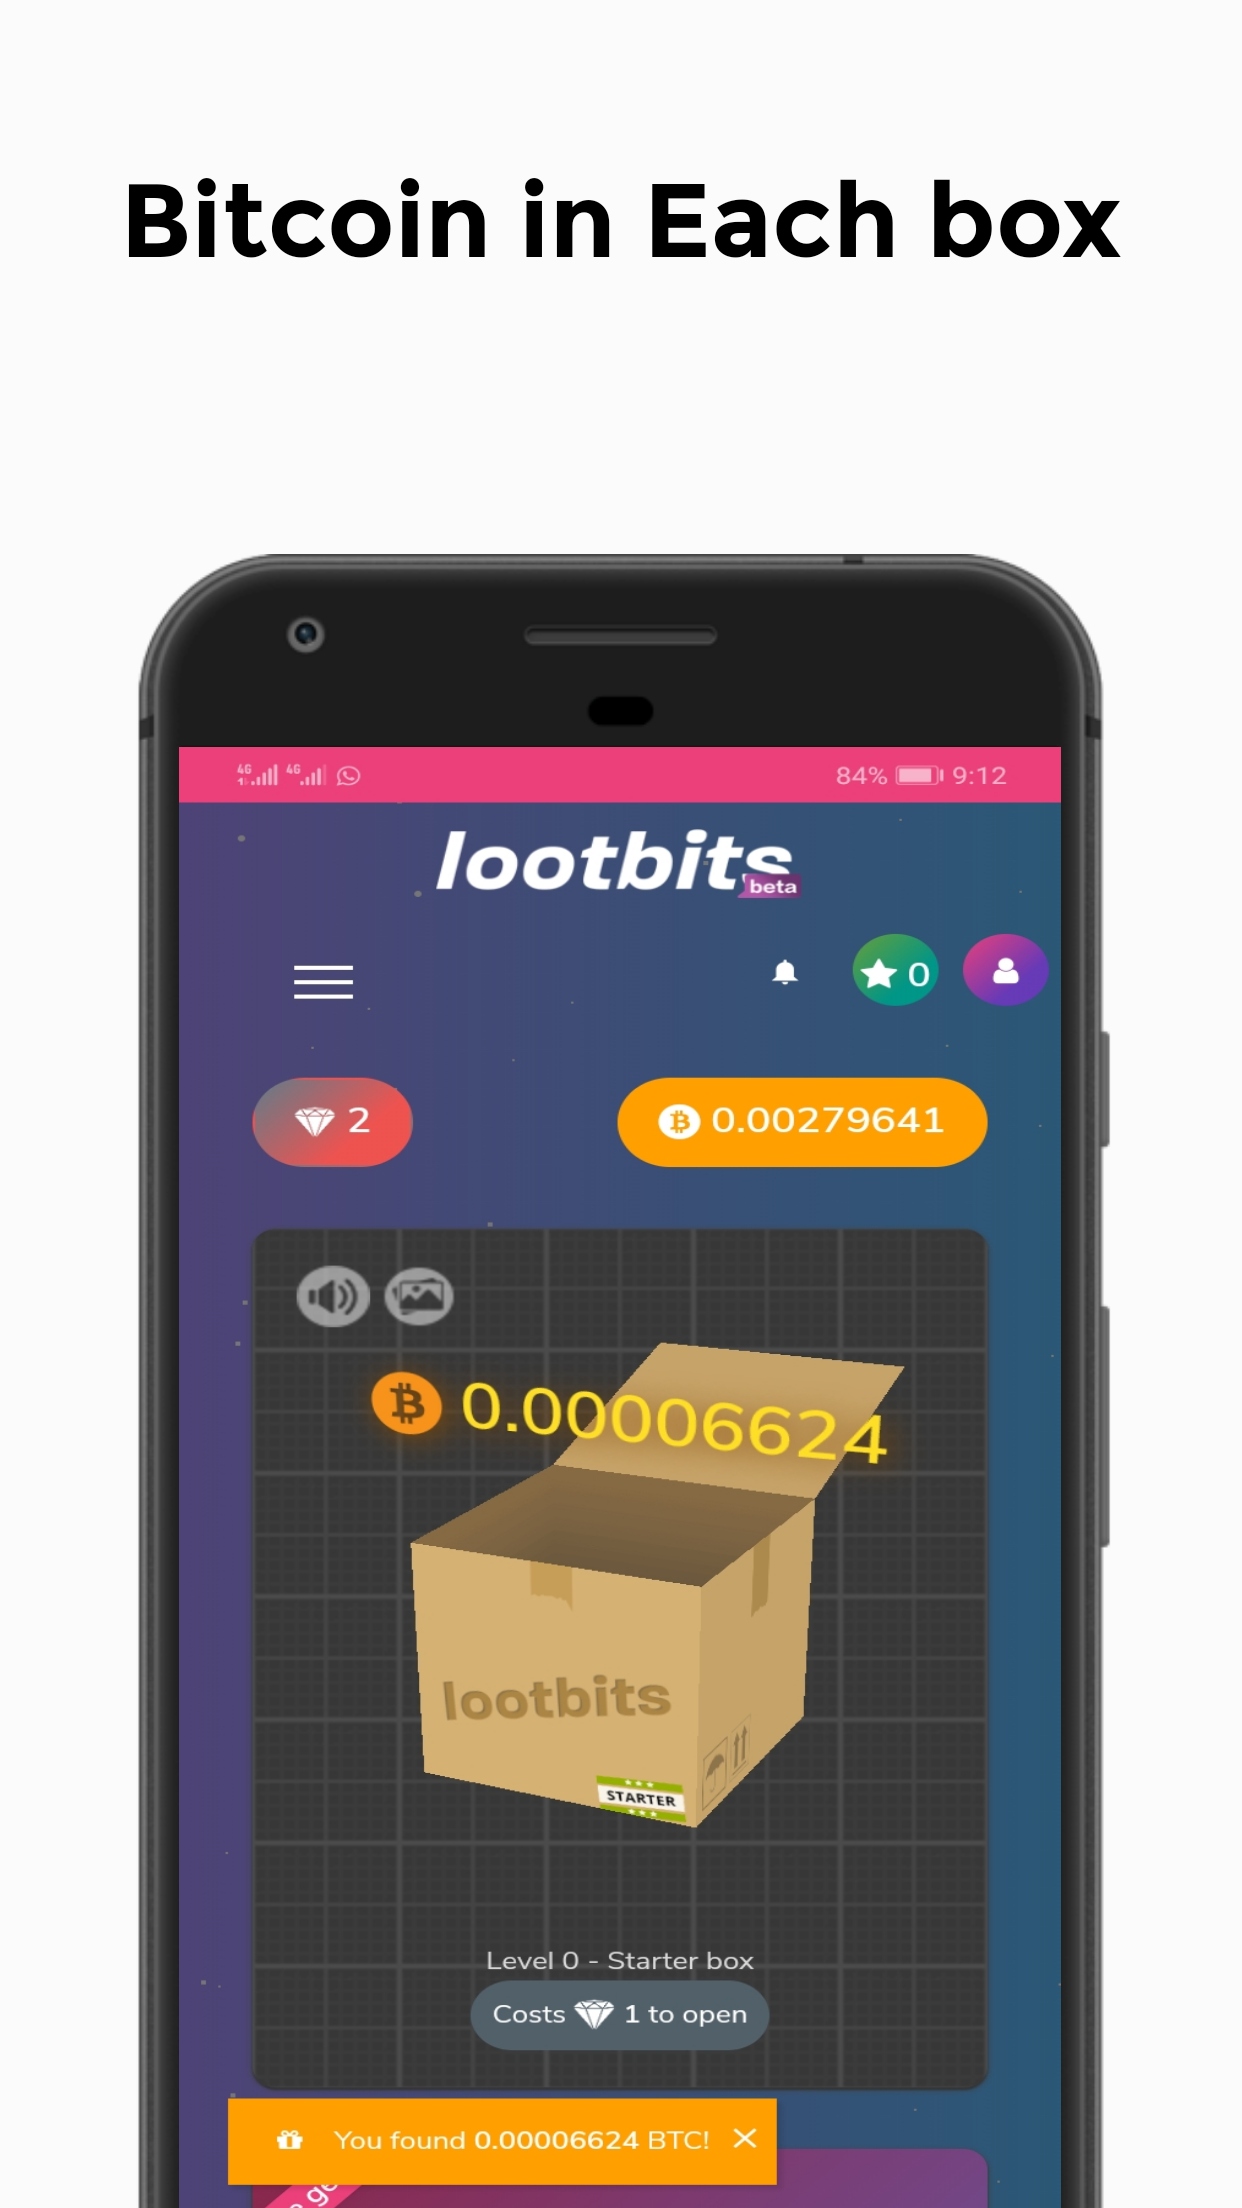 Lootbits